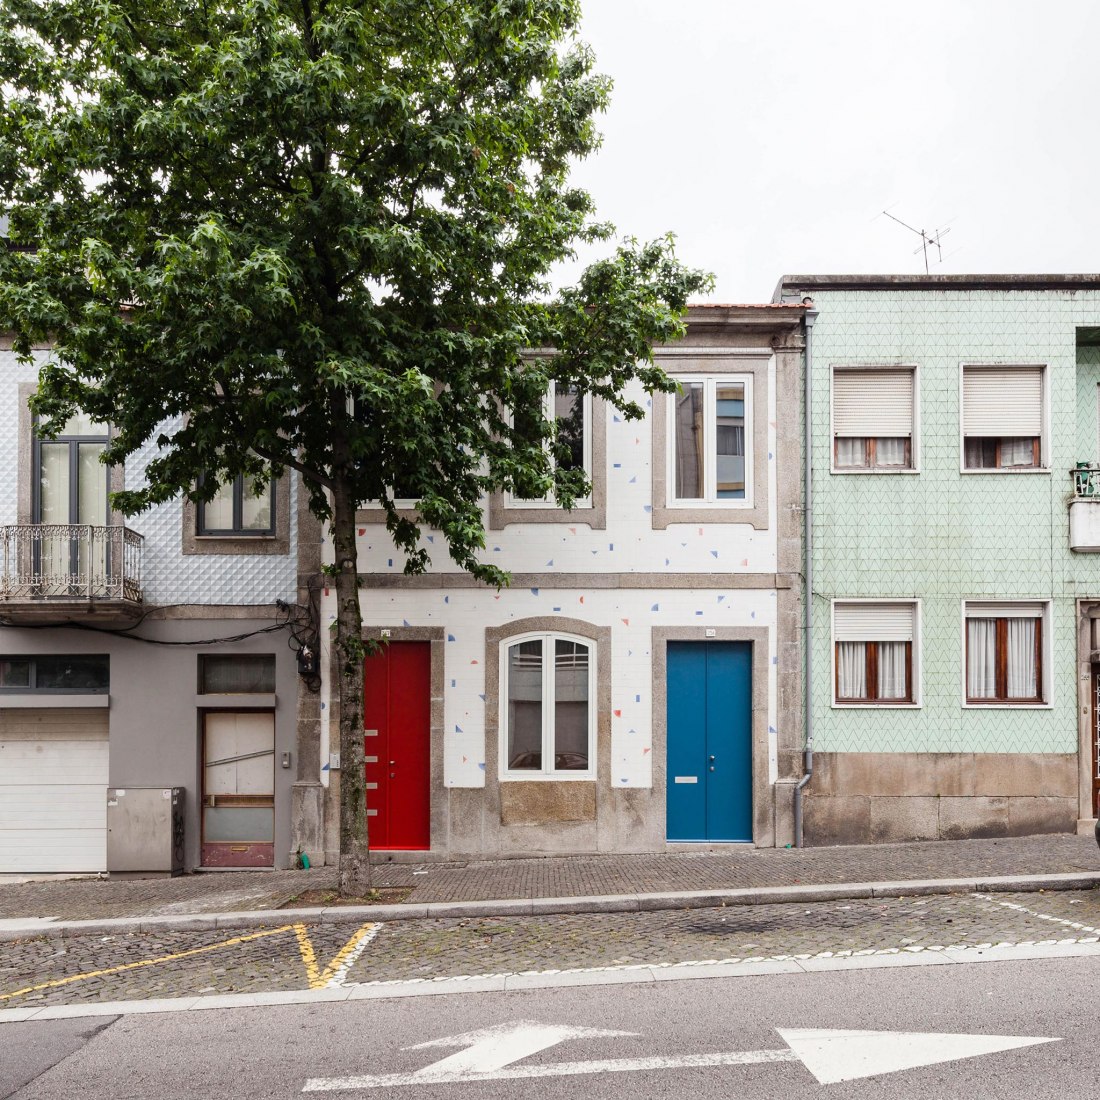 Vista frontal exterior. Casa en Rua Faris Guimarães por Fala Atelier. Fotografía © Ricardo Loureiro.